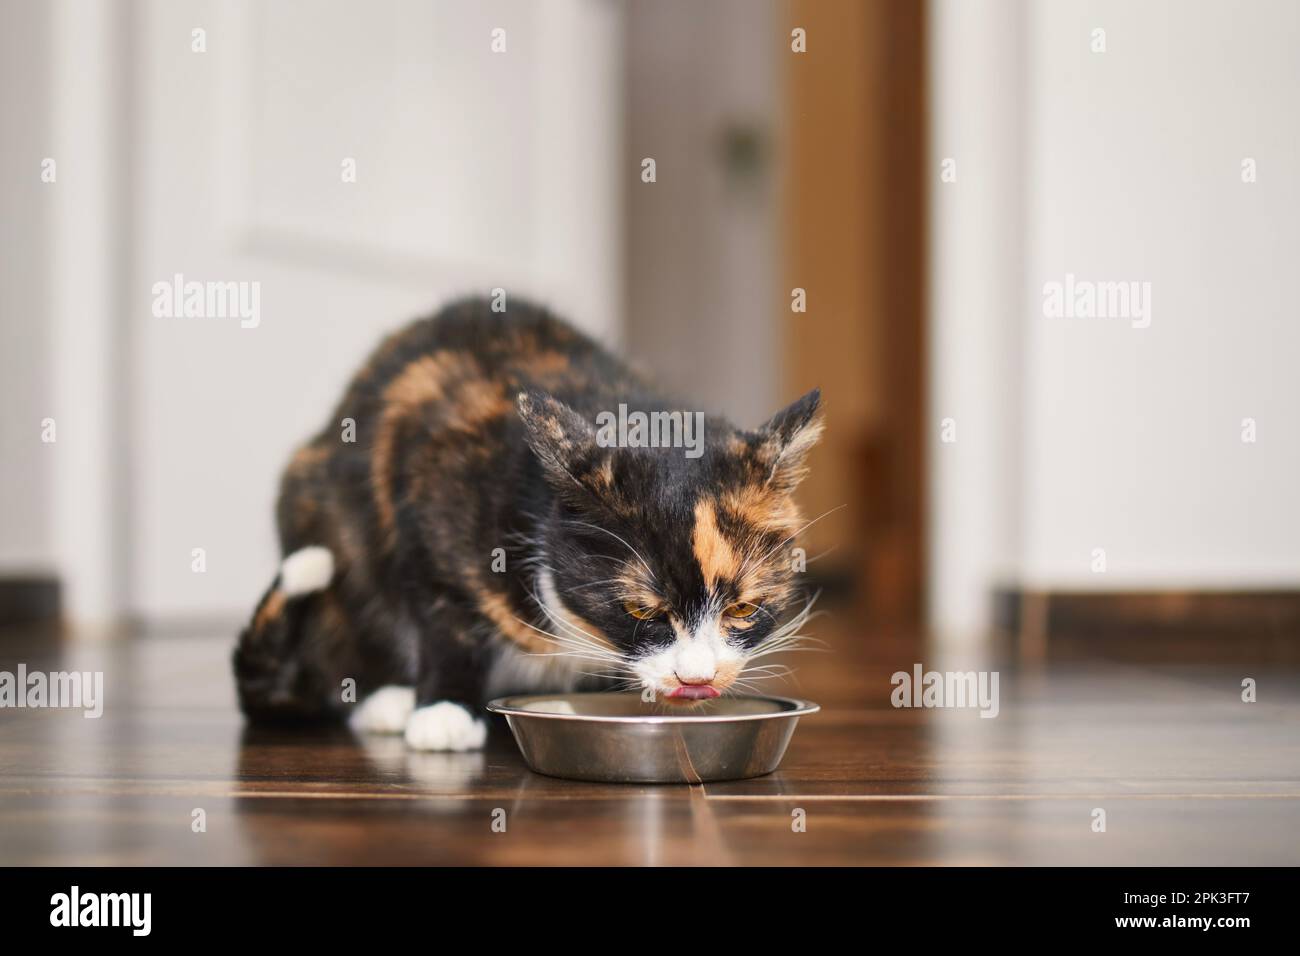 Le chat brun affamé se réglisse tout en mangeant dans un bol en métal à la maison dans la cuisine. La vie domestique avec les animaux. Banque D'Images